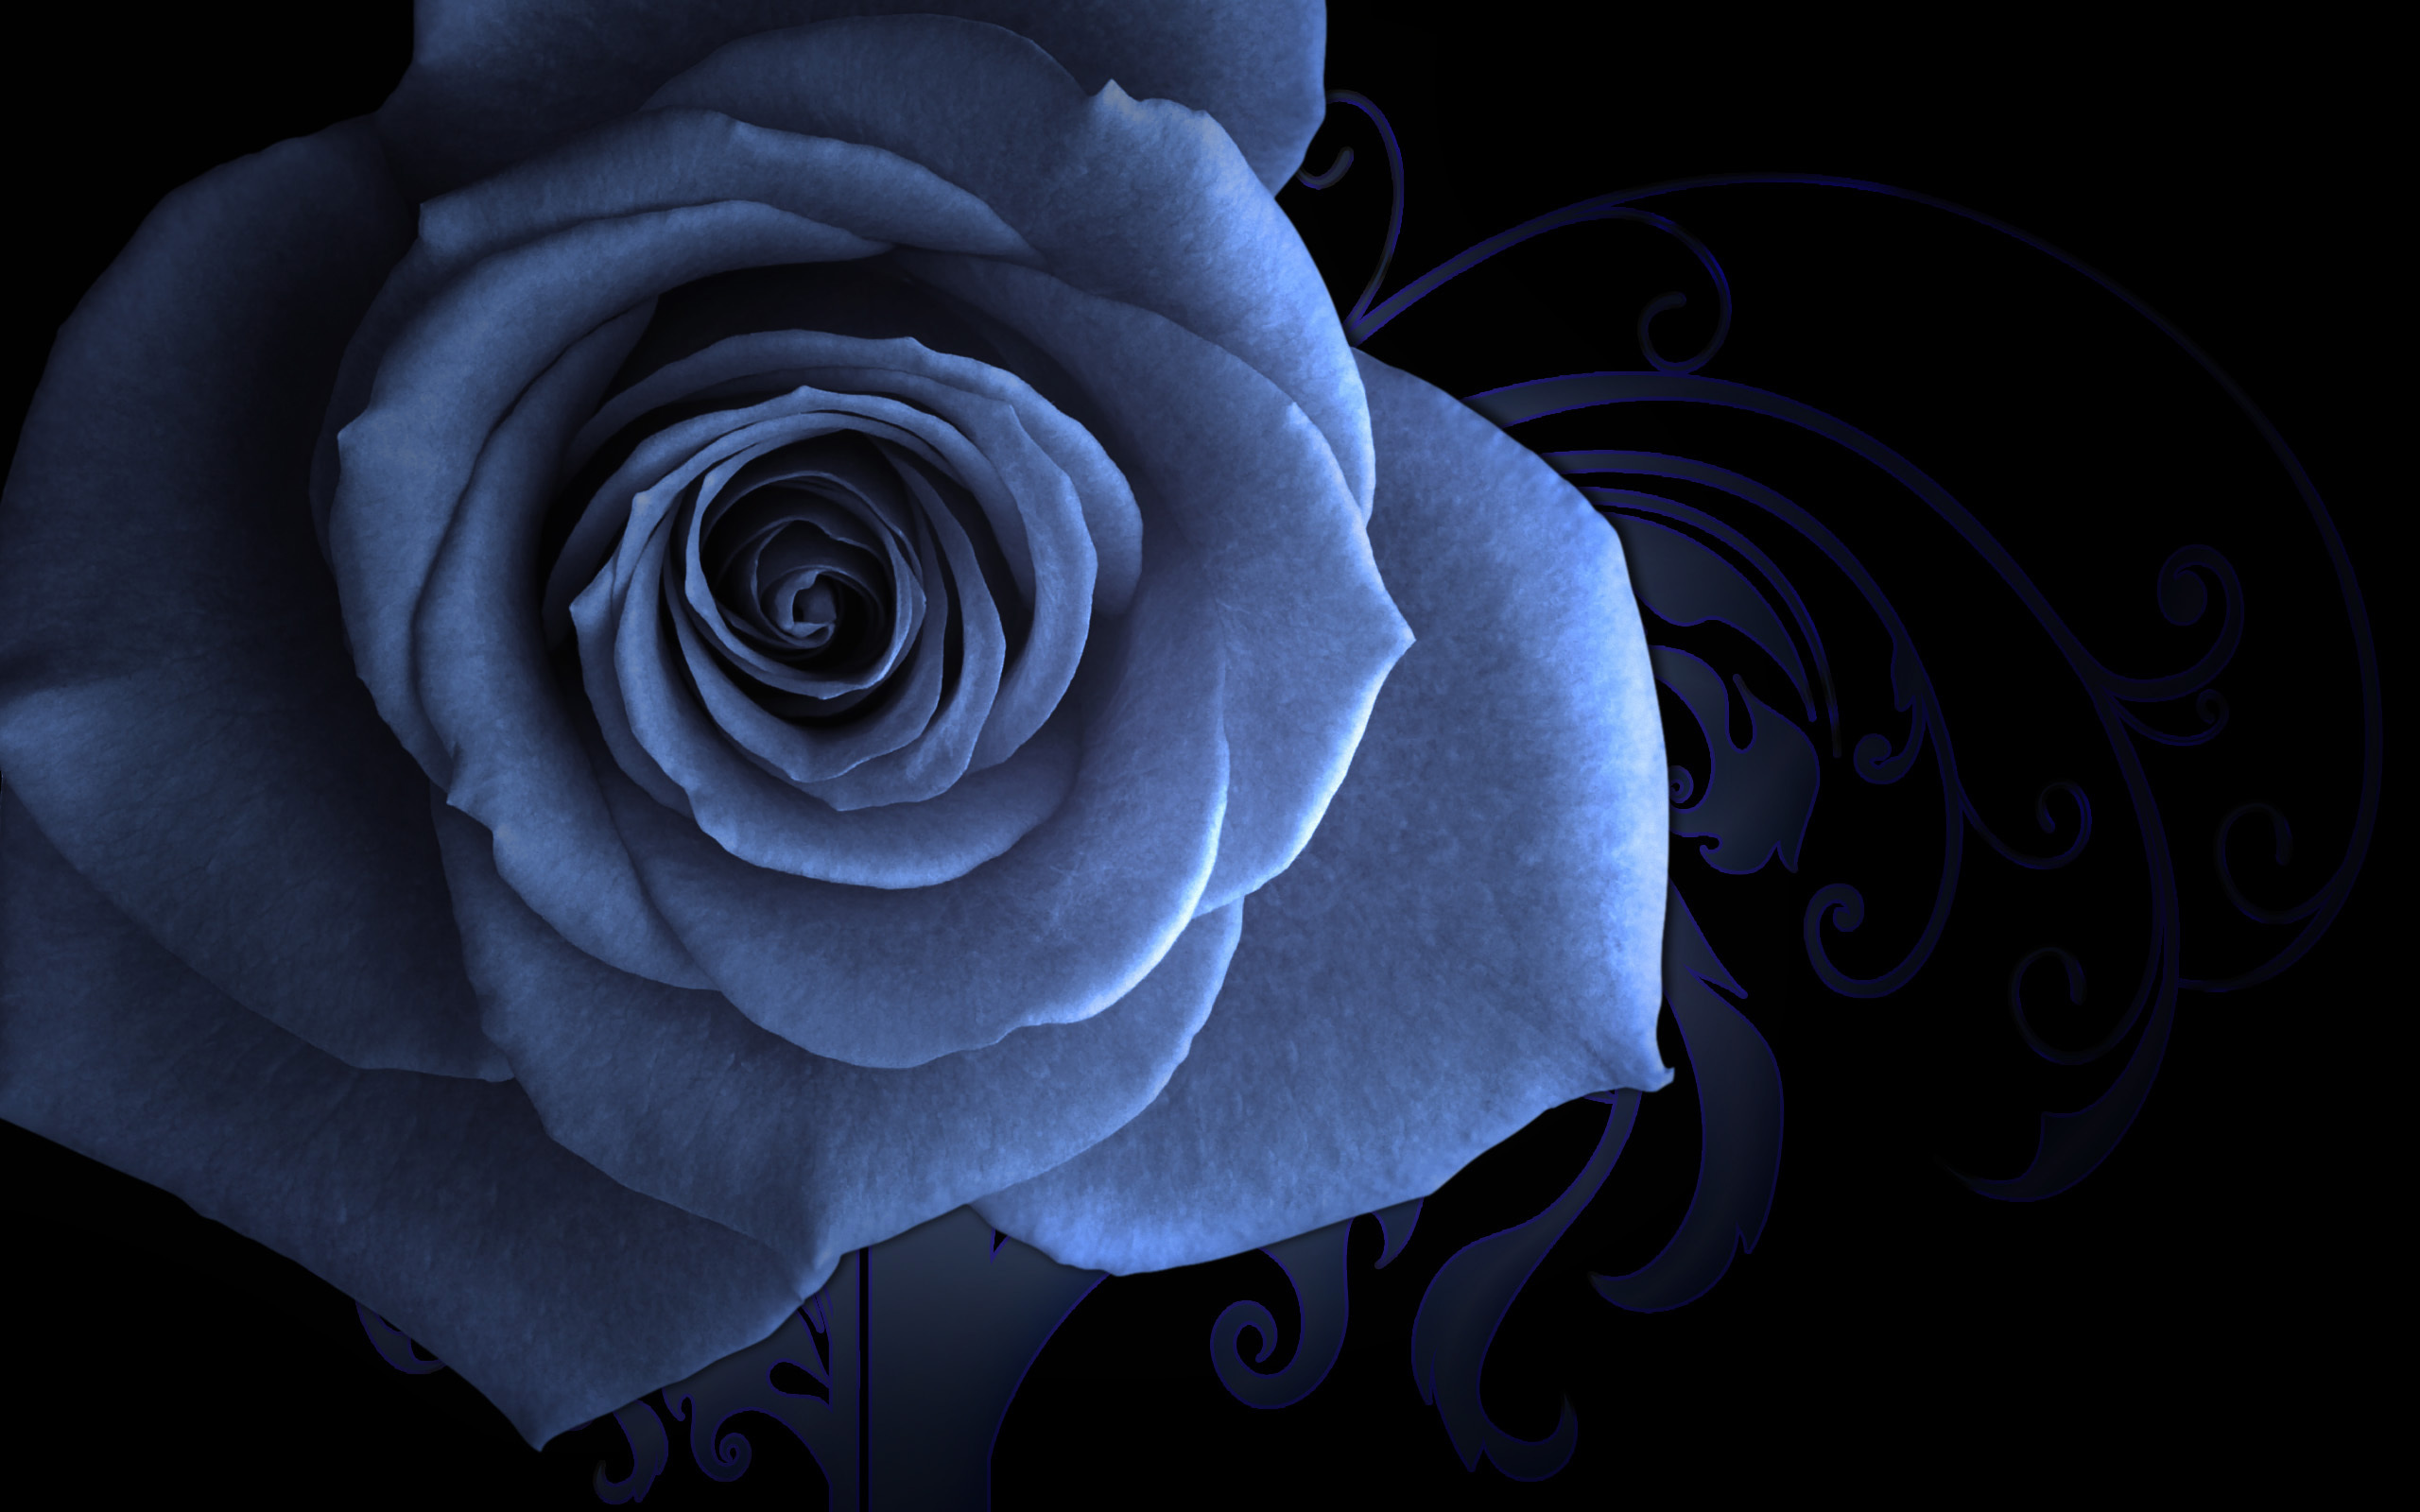 Artistic rose desktop wallpaper